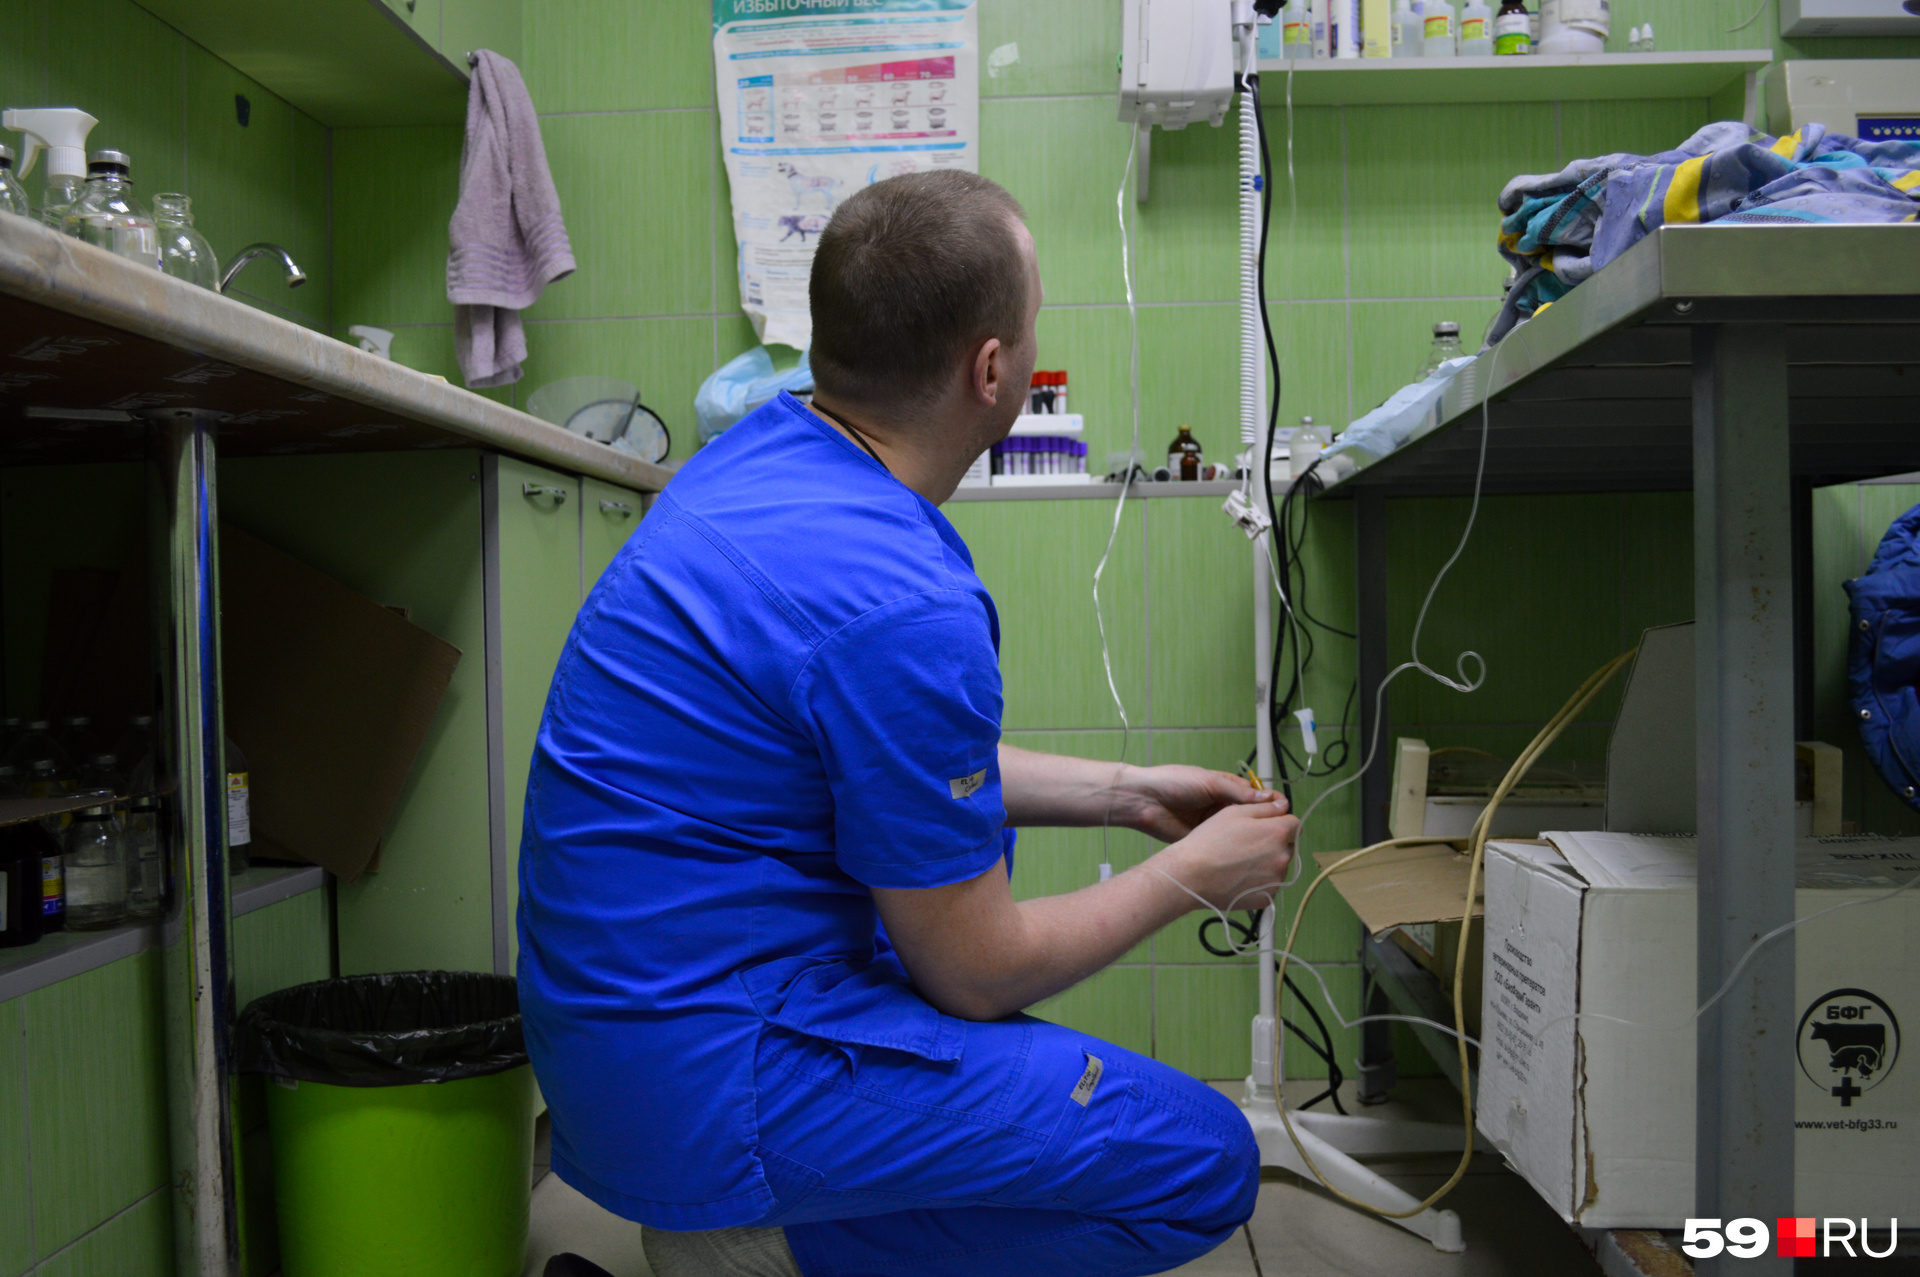 Ветеринар Илья Латыпов меняет капельницу Чернышу